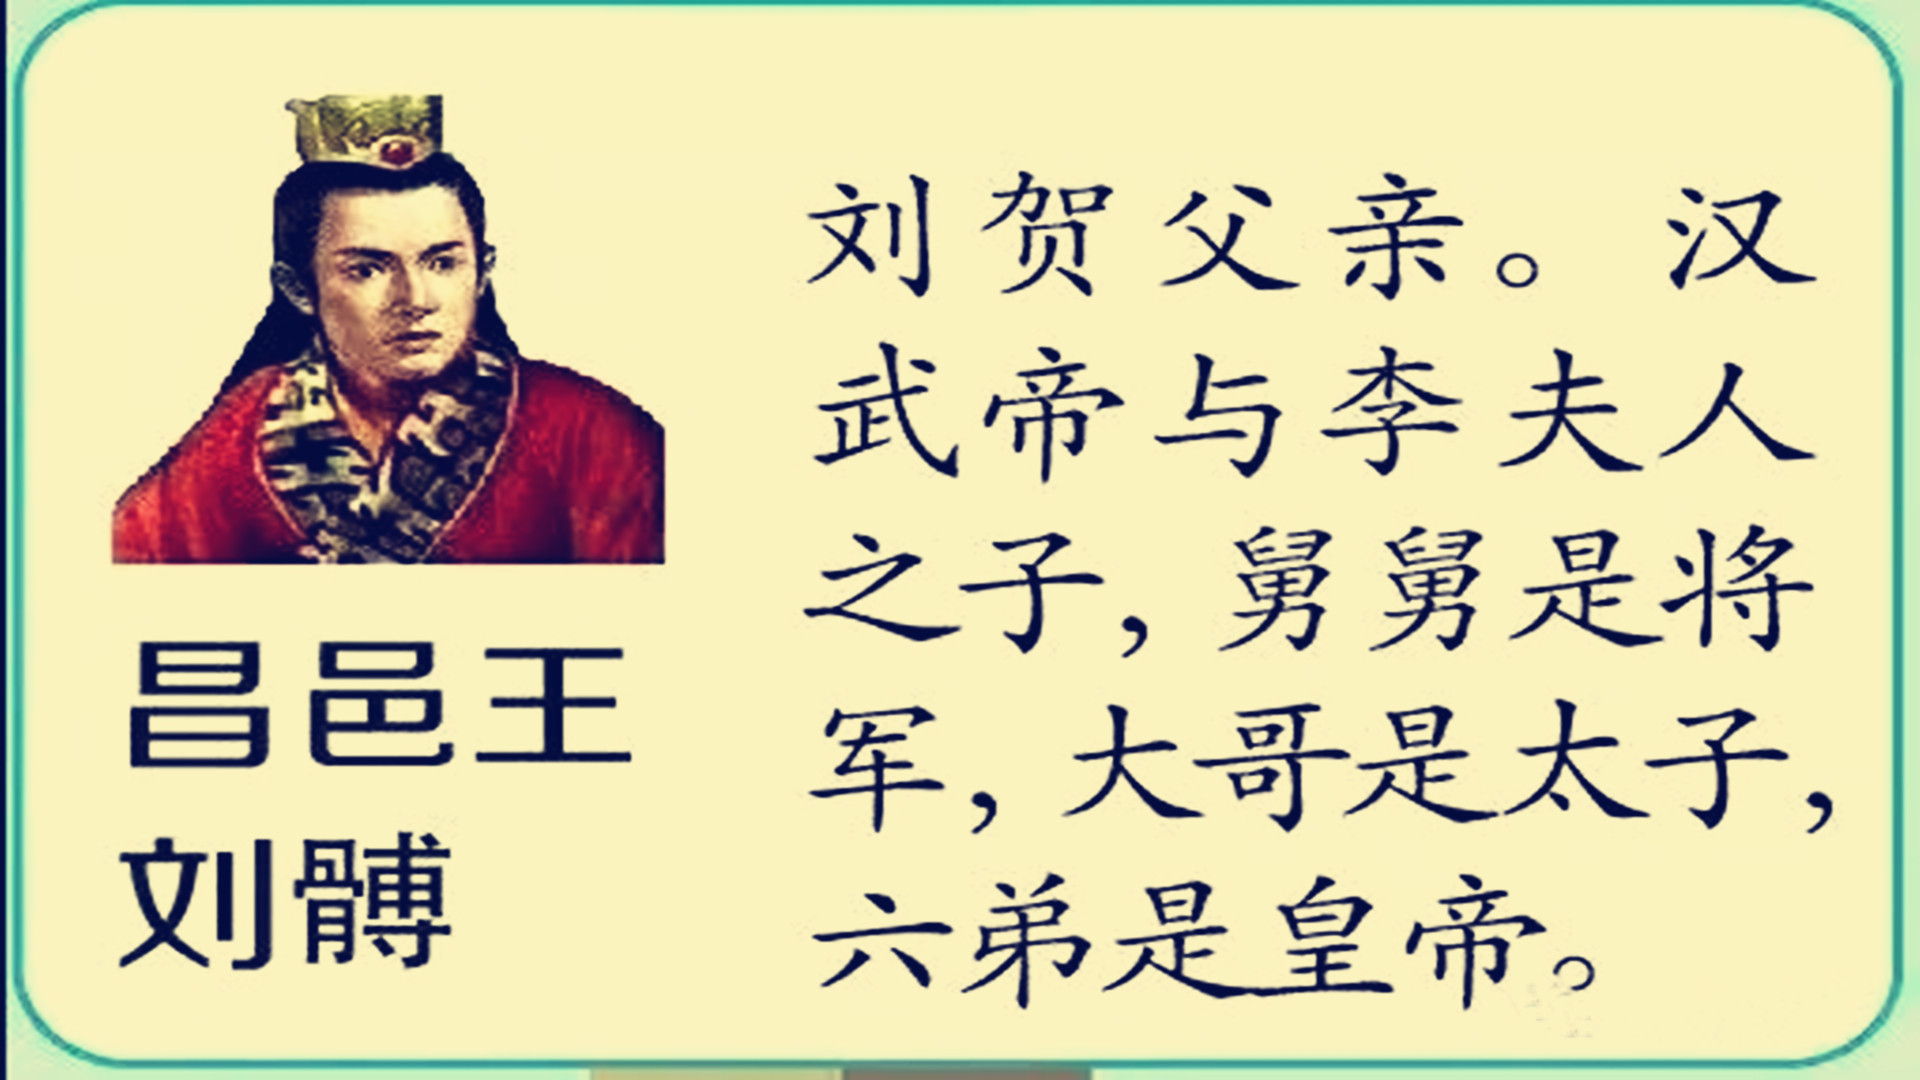 你可知道，雄才伟略的汉武帝，为何将皇位传给了最小的儿子刘弗陵